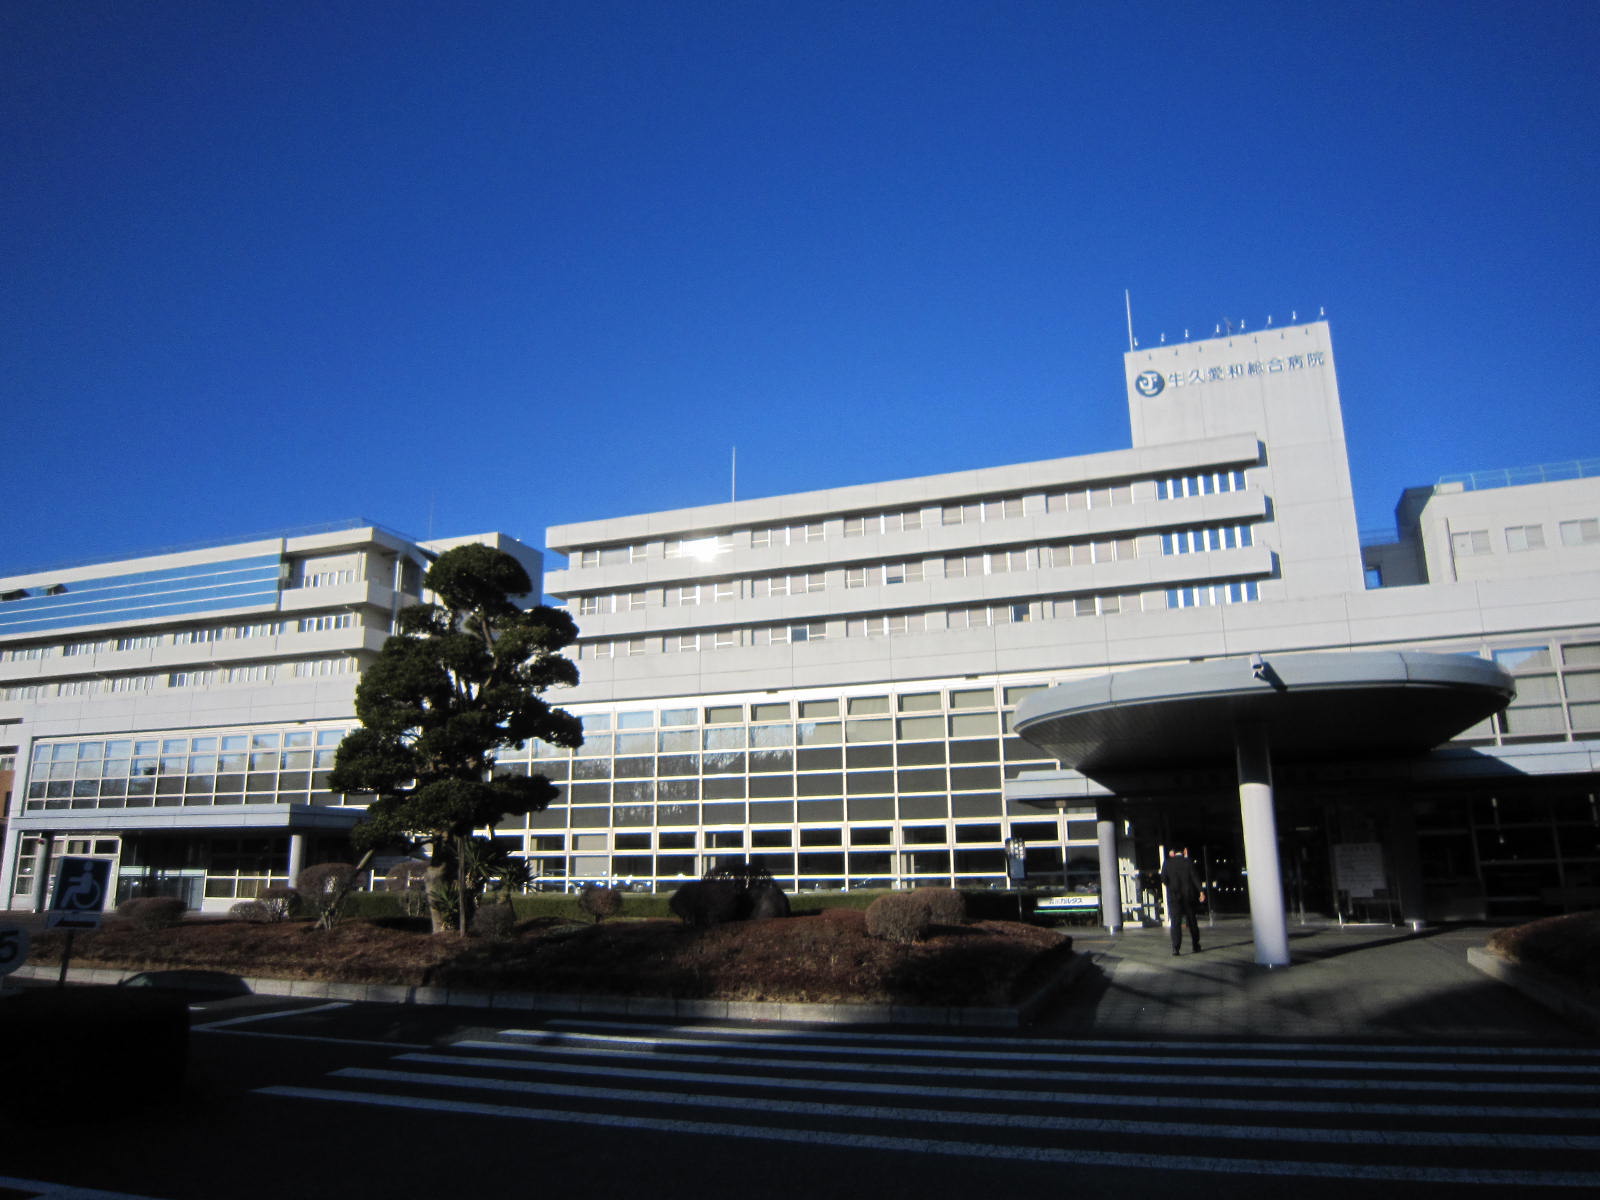 Hospital. Ushikuaiwasogobyoin until the (hospital) 1681m